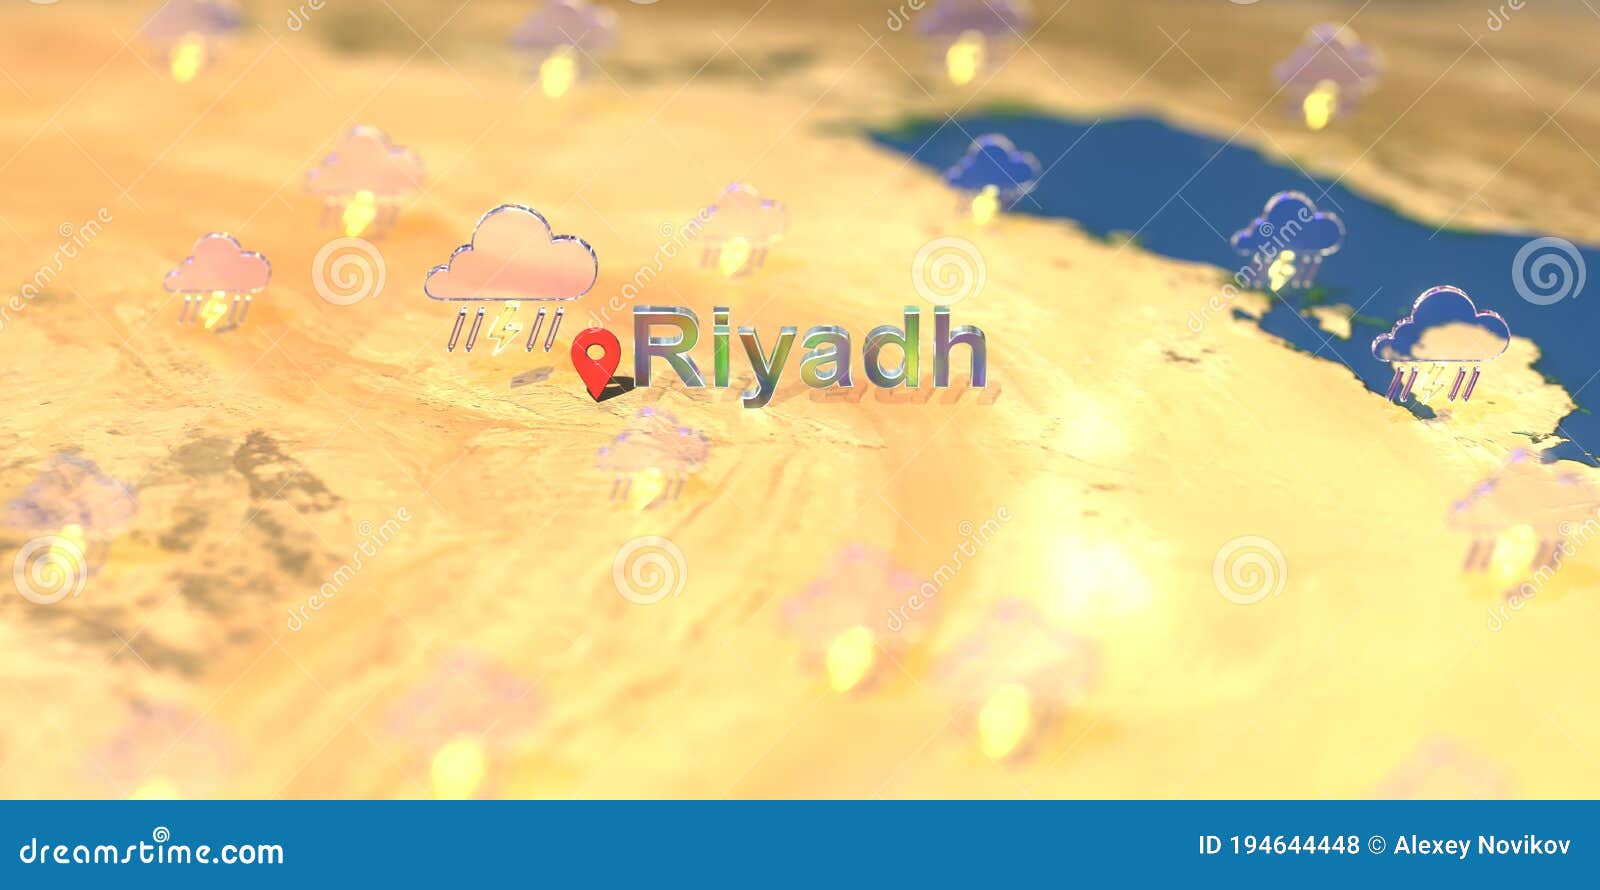 Weather riyadh Riyadh Summer